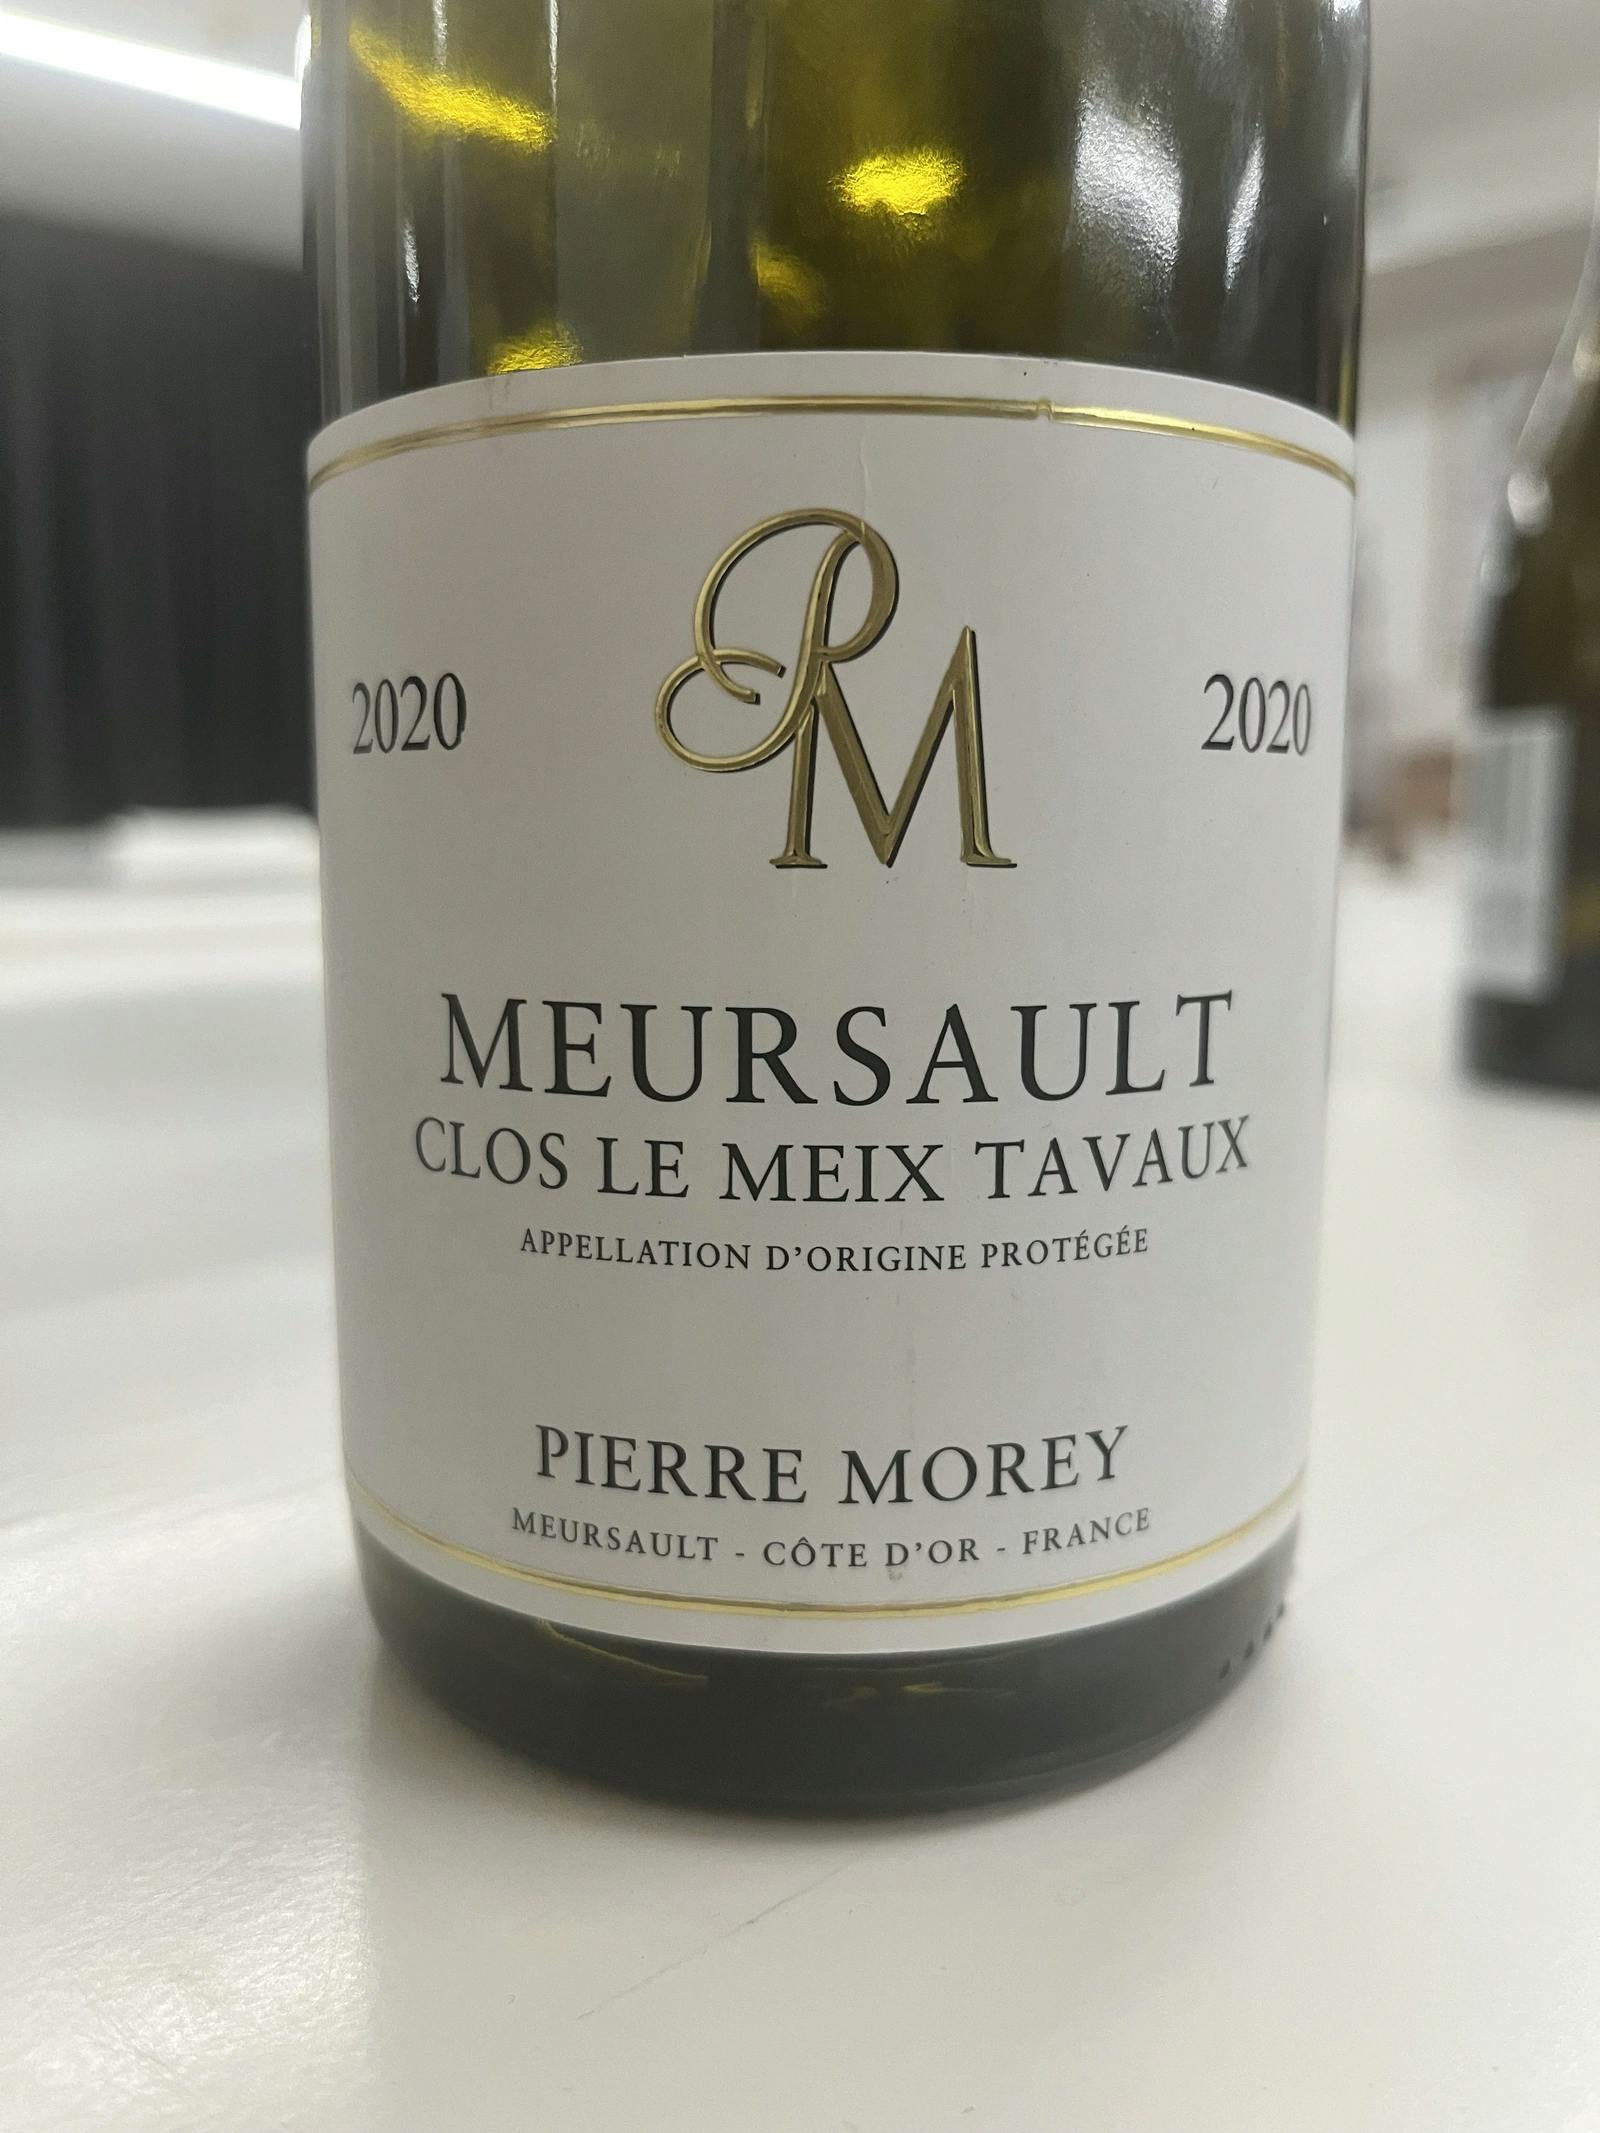 Pierre Morey Meursault Clos le Meix Tavaux 2020